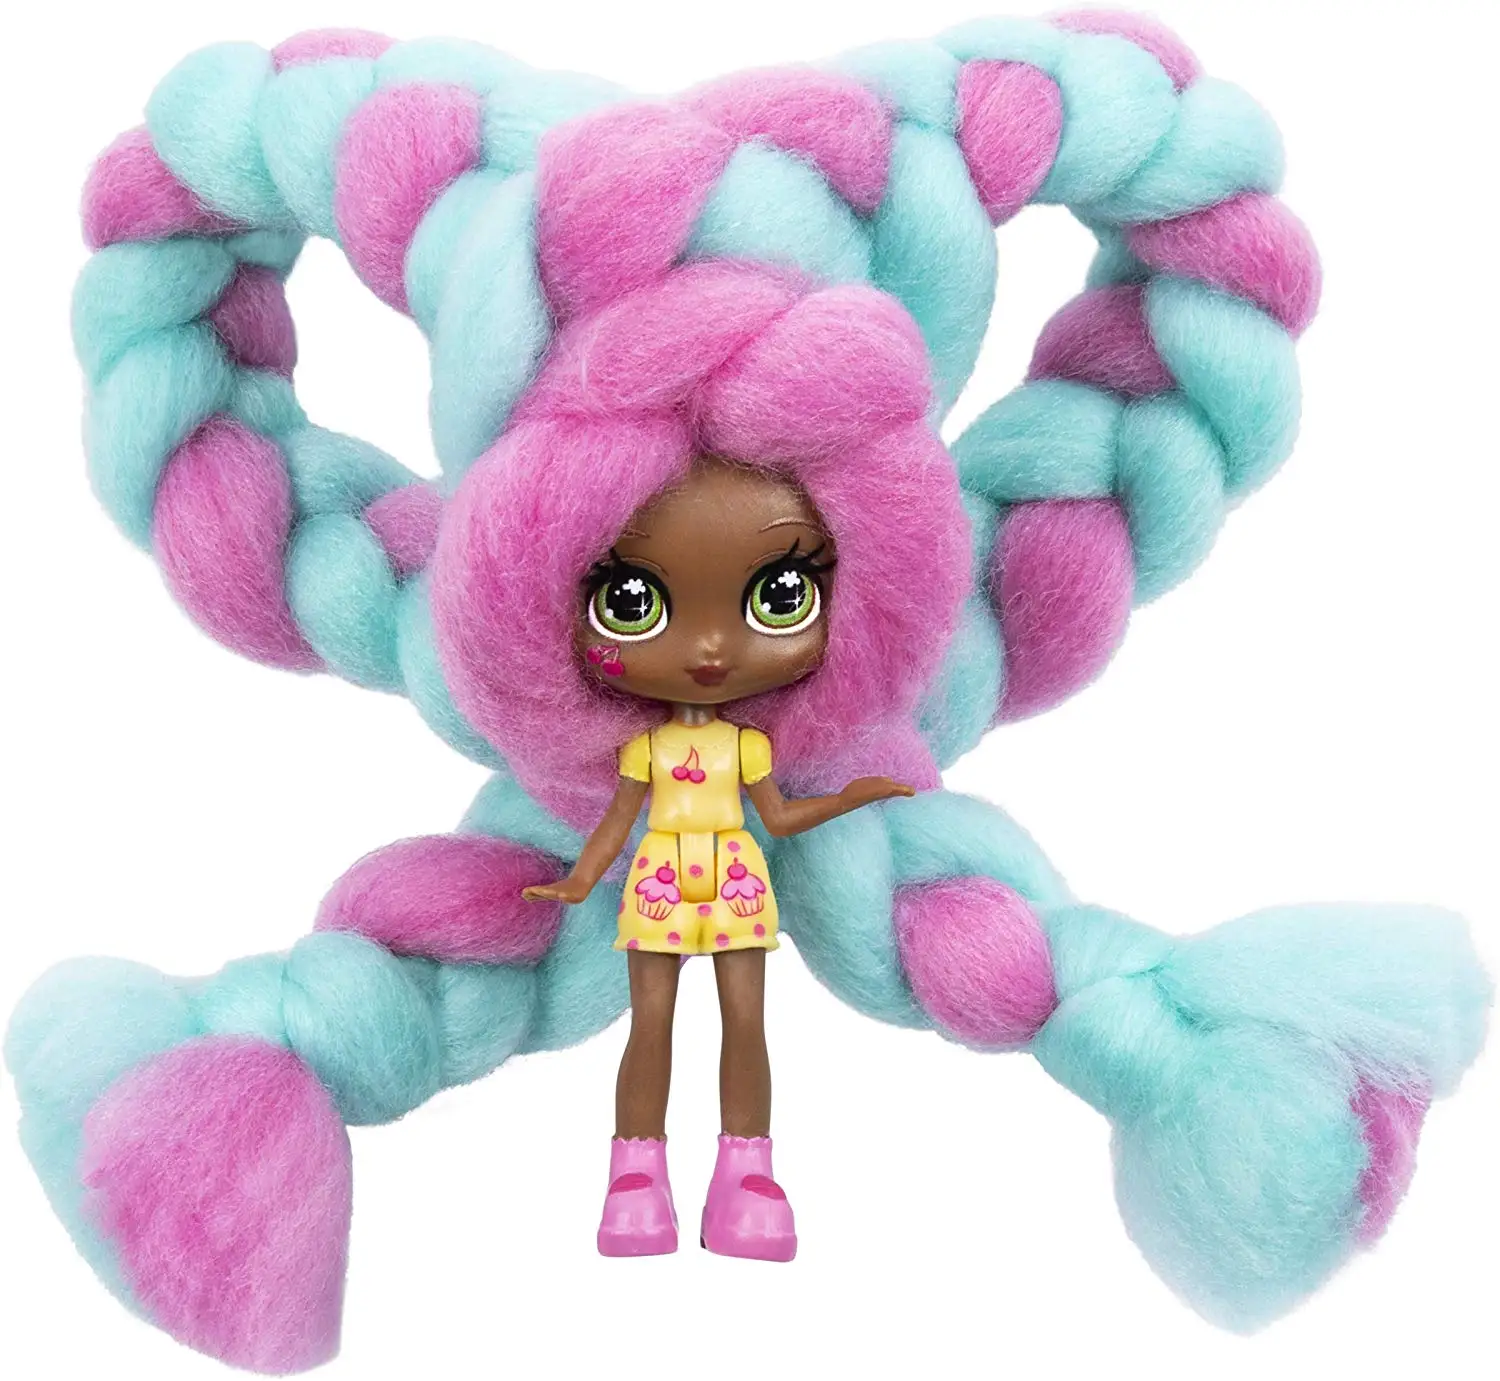 Кукла Candylocks Marshmallow Candy Hair Doll Ароматизированная кукла-сюрприз, пластиковая кукла для маленькой девочки, кукла для девочек, детские игрушки, подарок